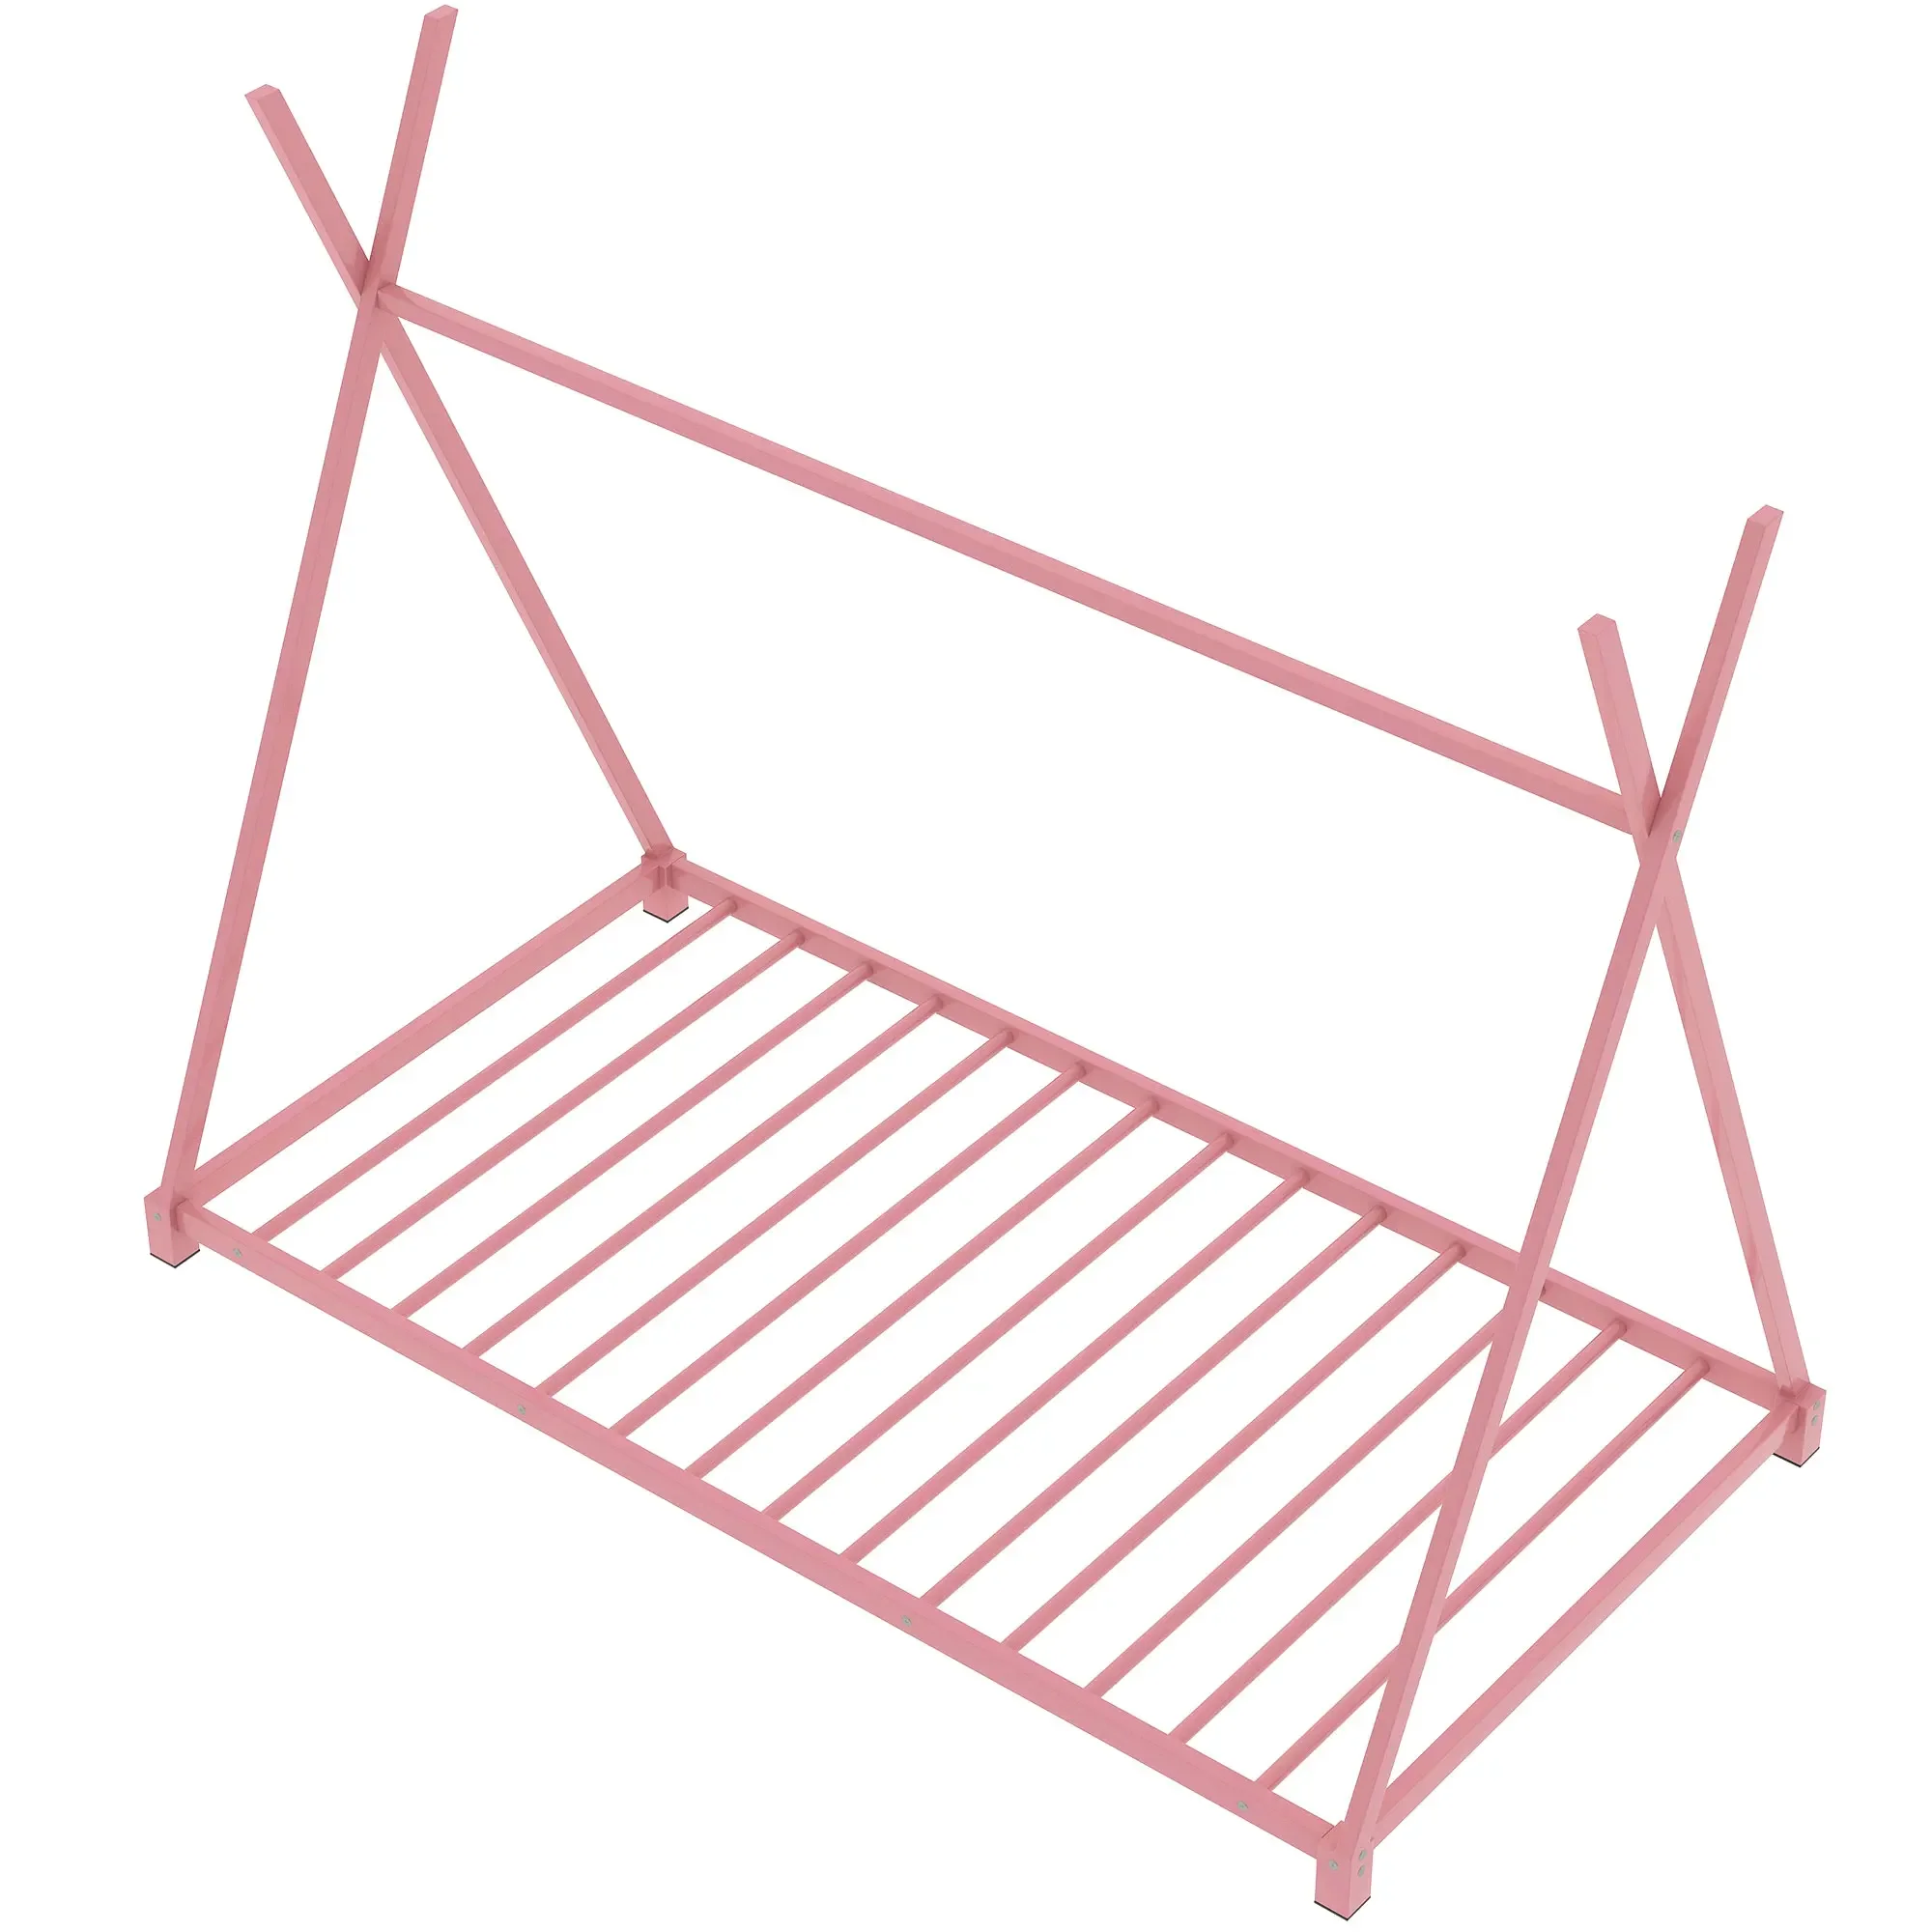 Металлическая двухразмерная кровать-платформа для дома с треугольной структурой, розовая